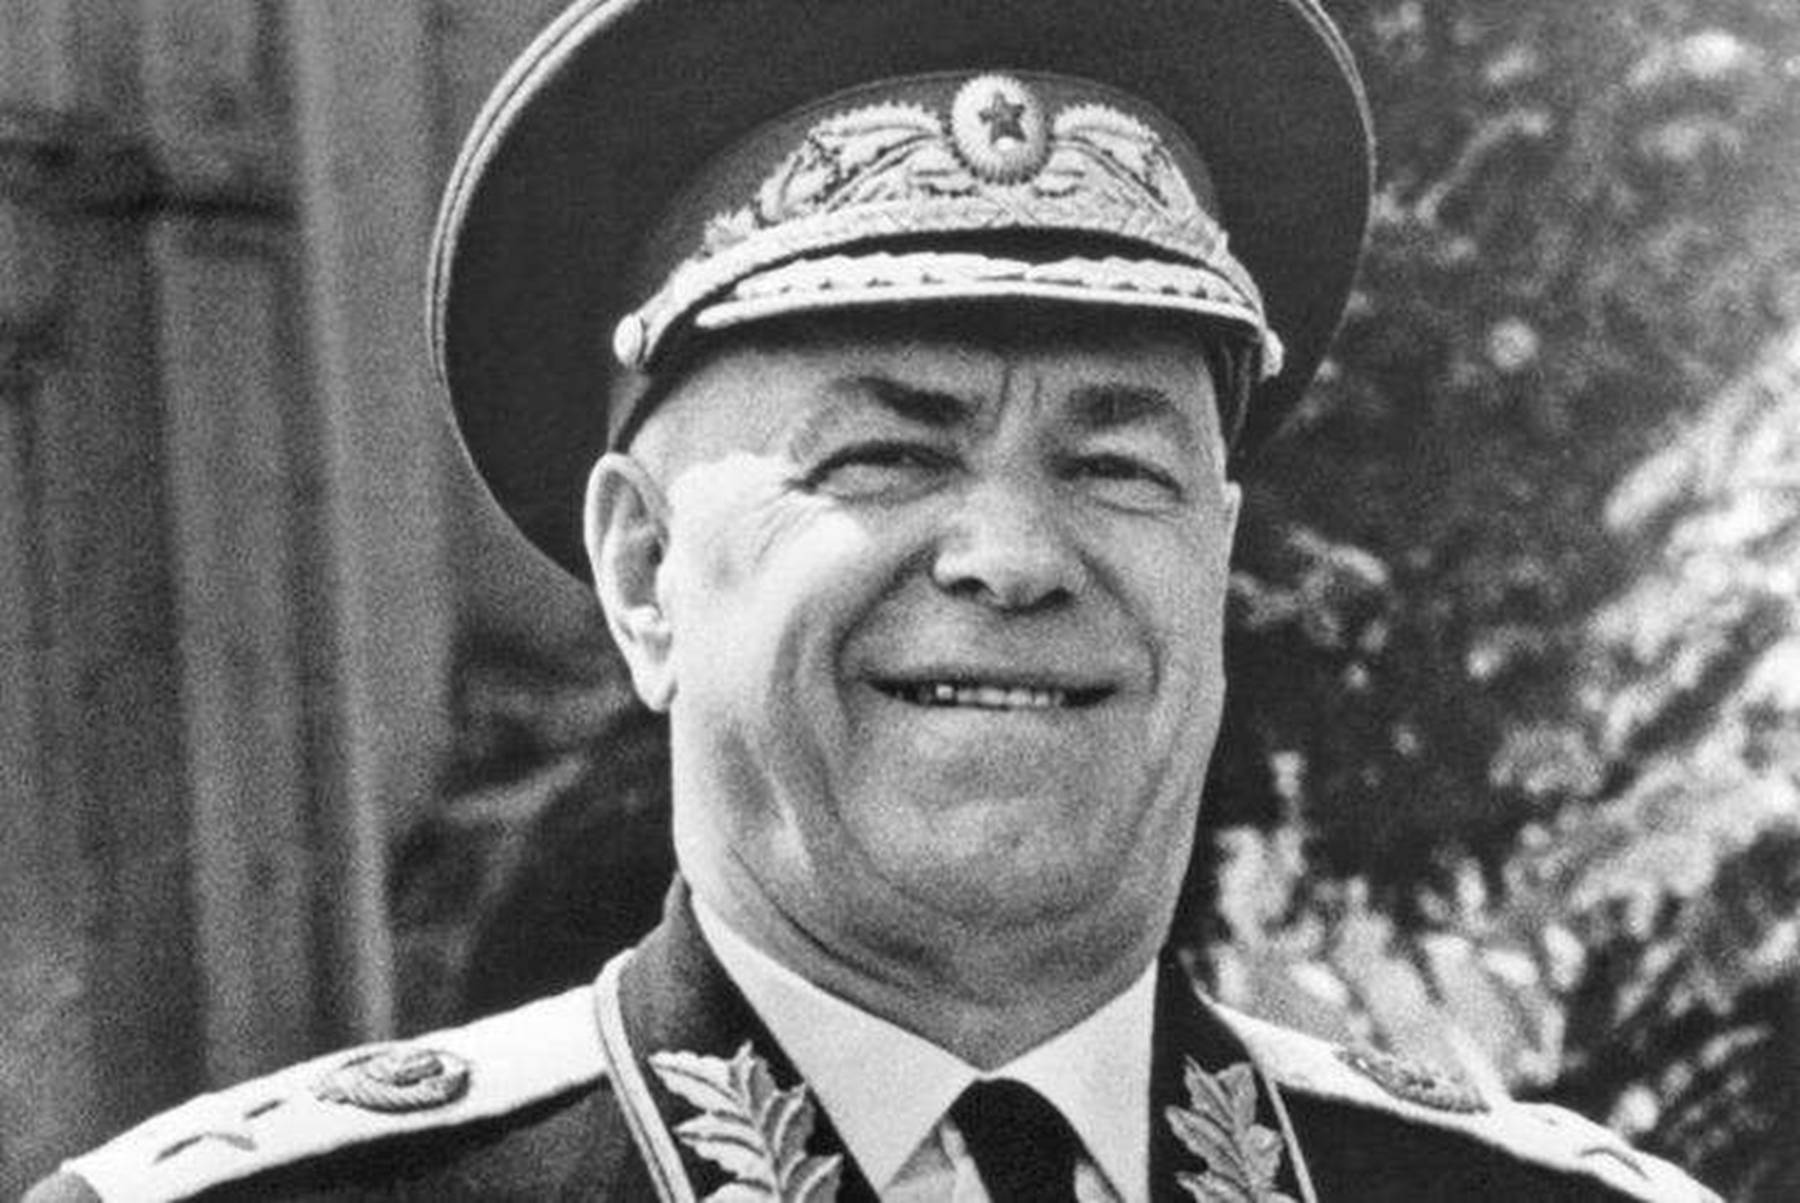 朱可夫是苏联著名军事家,因其在苏德战争中的卓越功勋,被公认为是第二